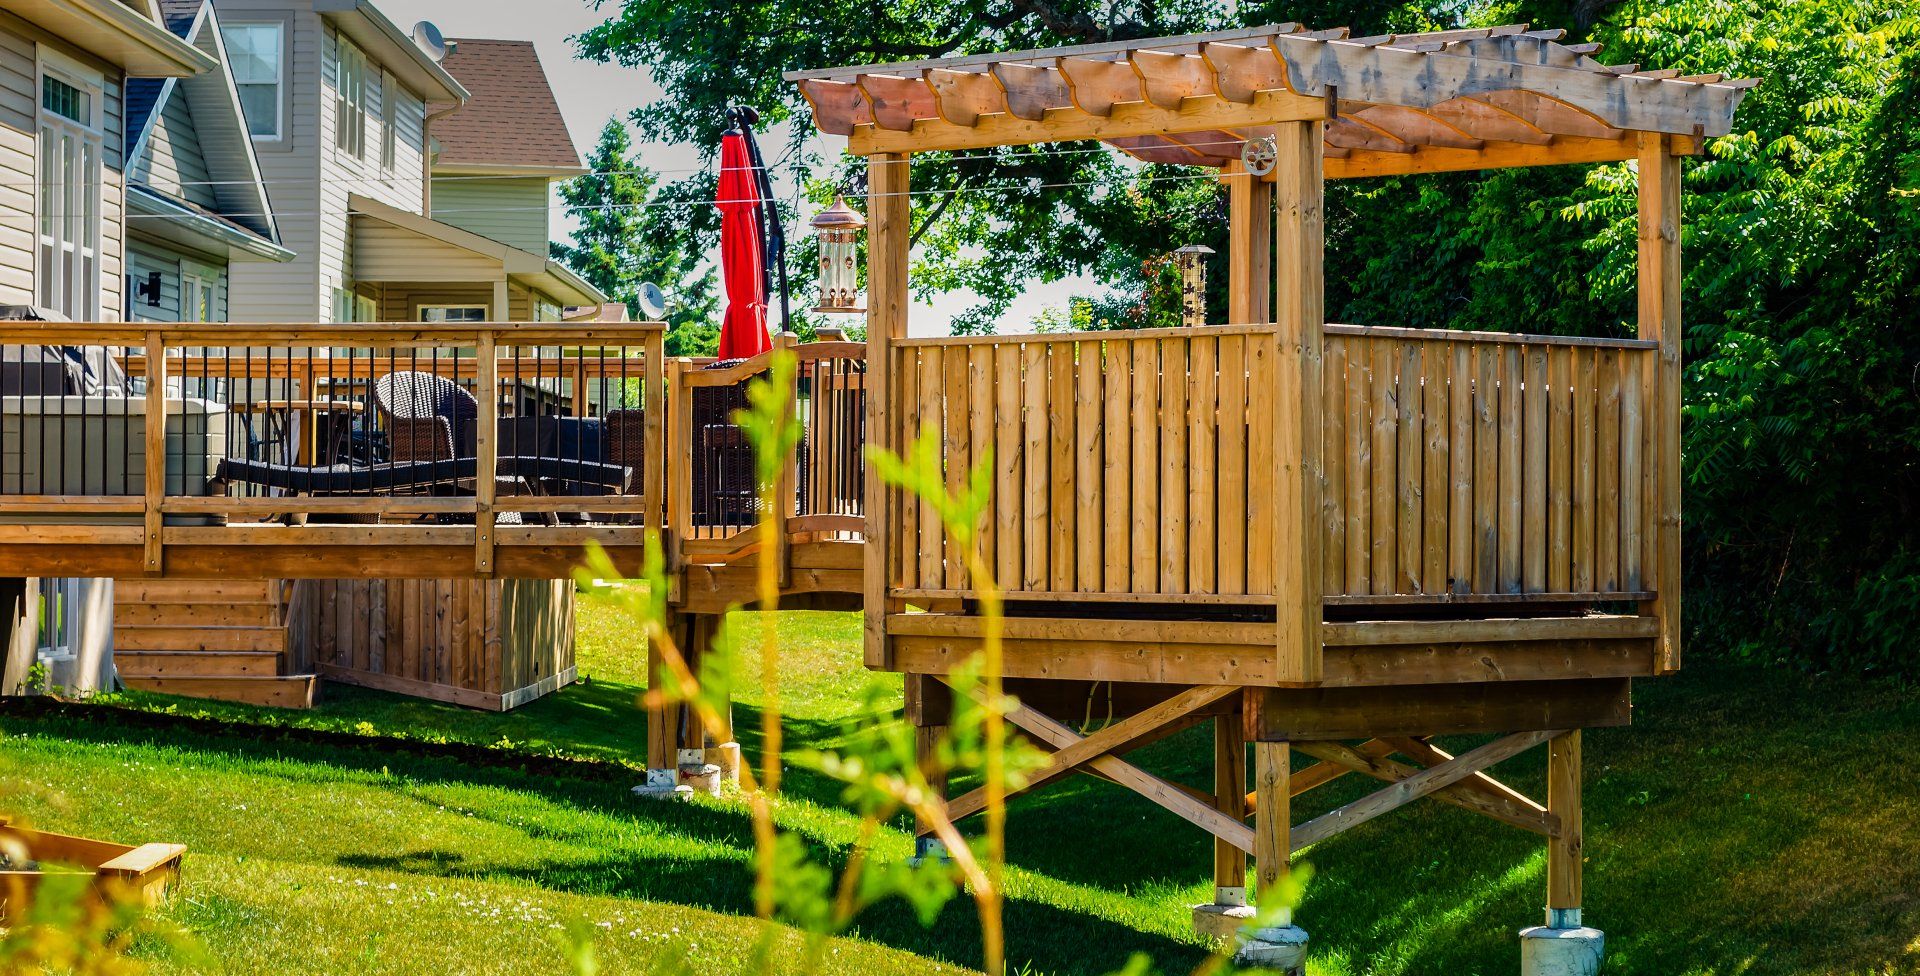 Trenton Backyard deck | Trenton Backyard deck ideas